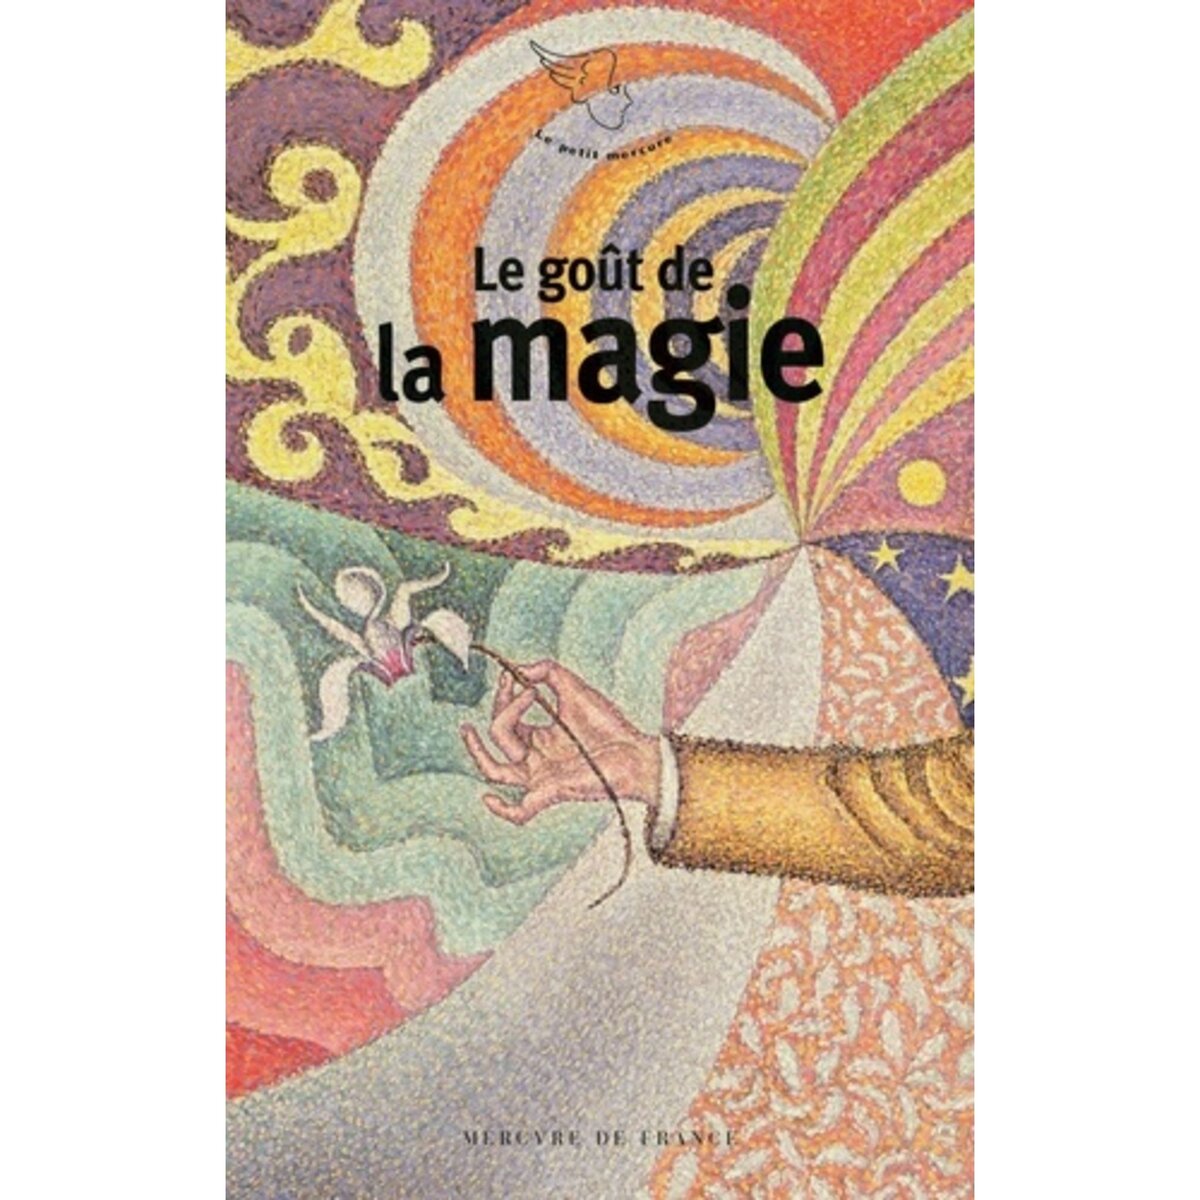  LE GOUT DE LA MAGIE, David Rémi